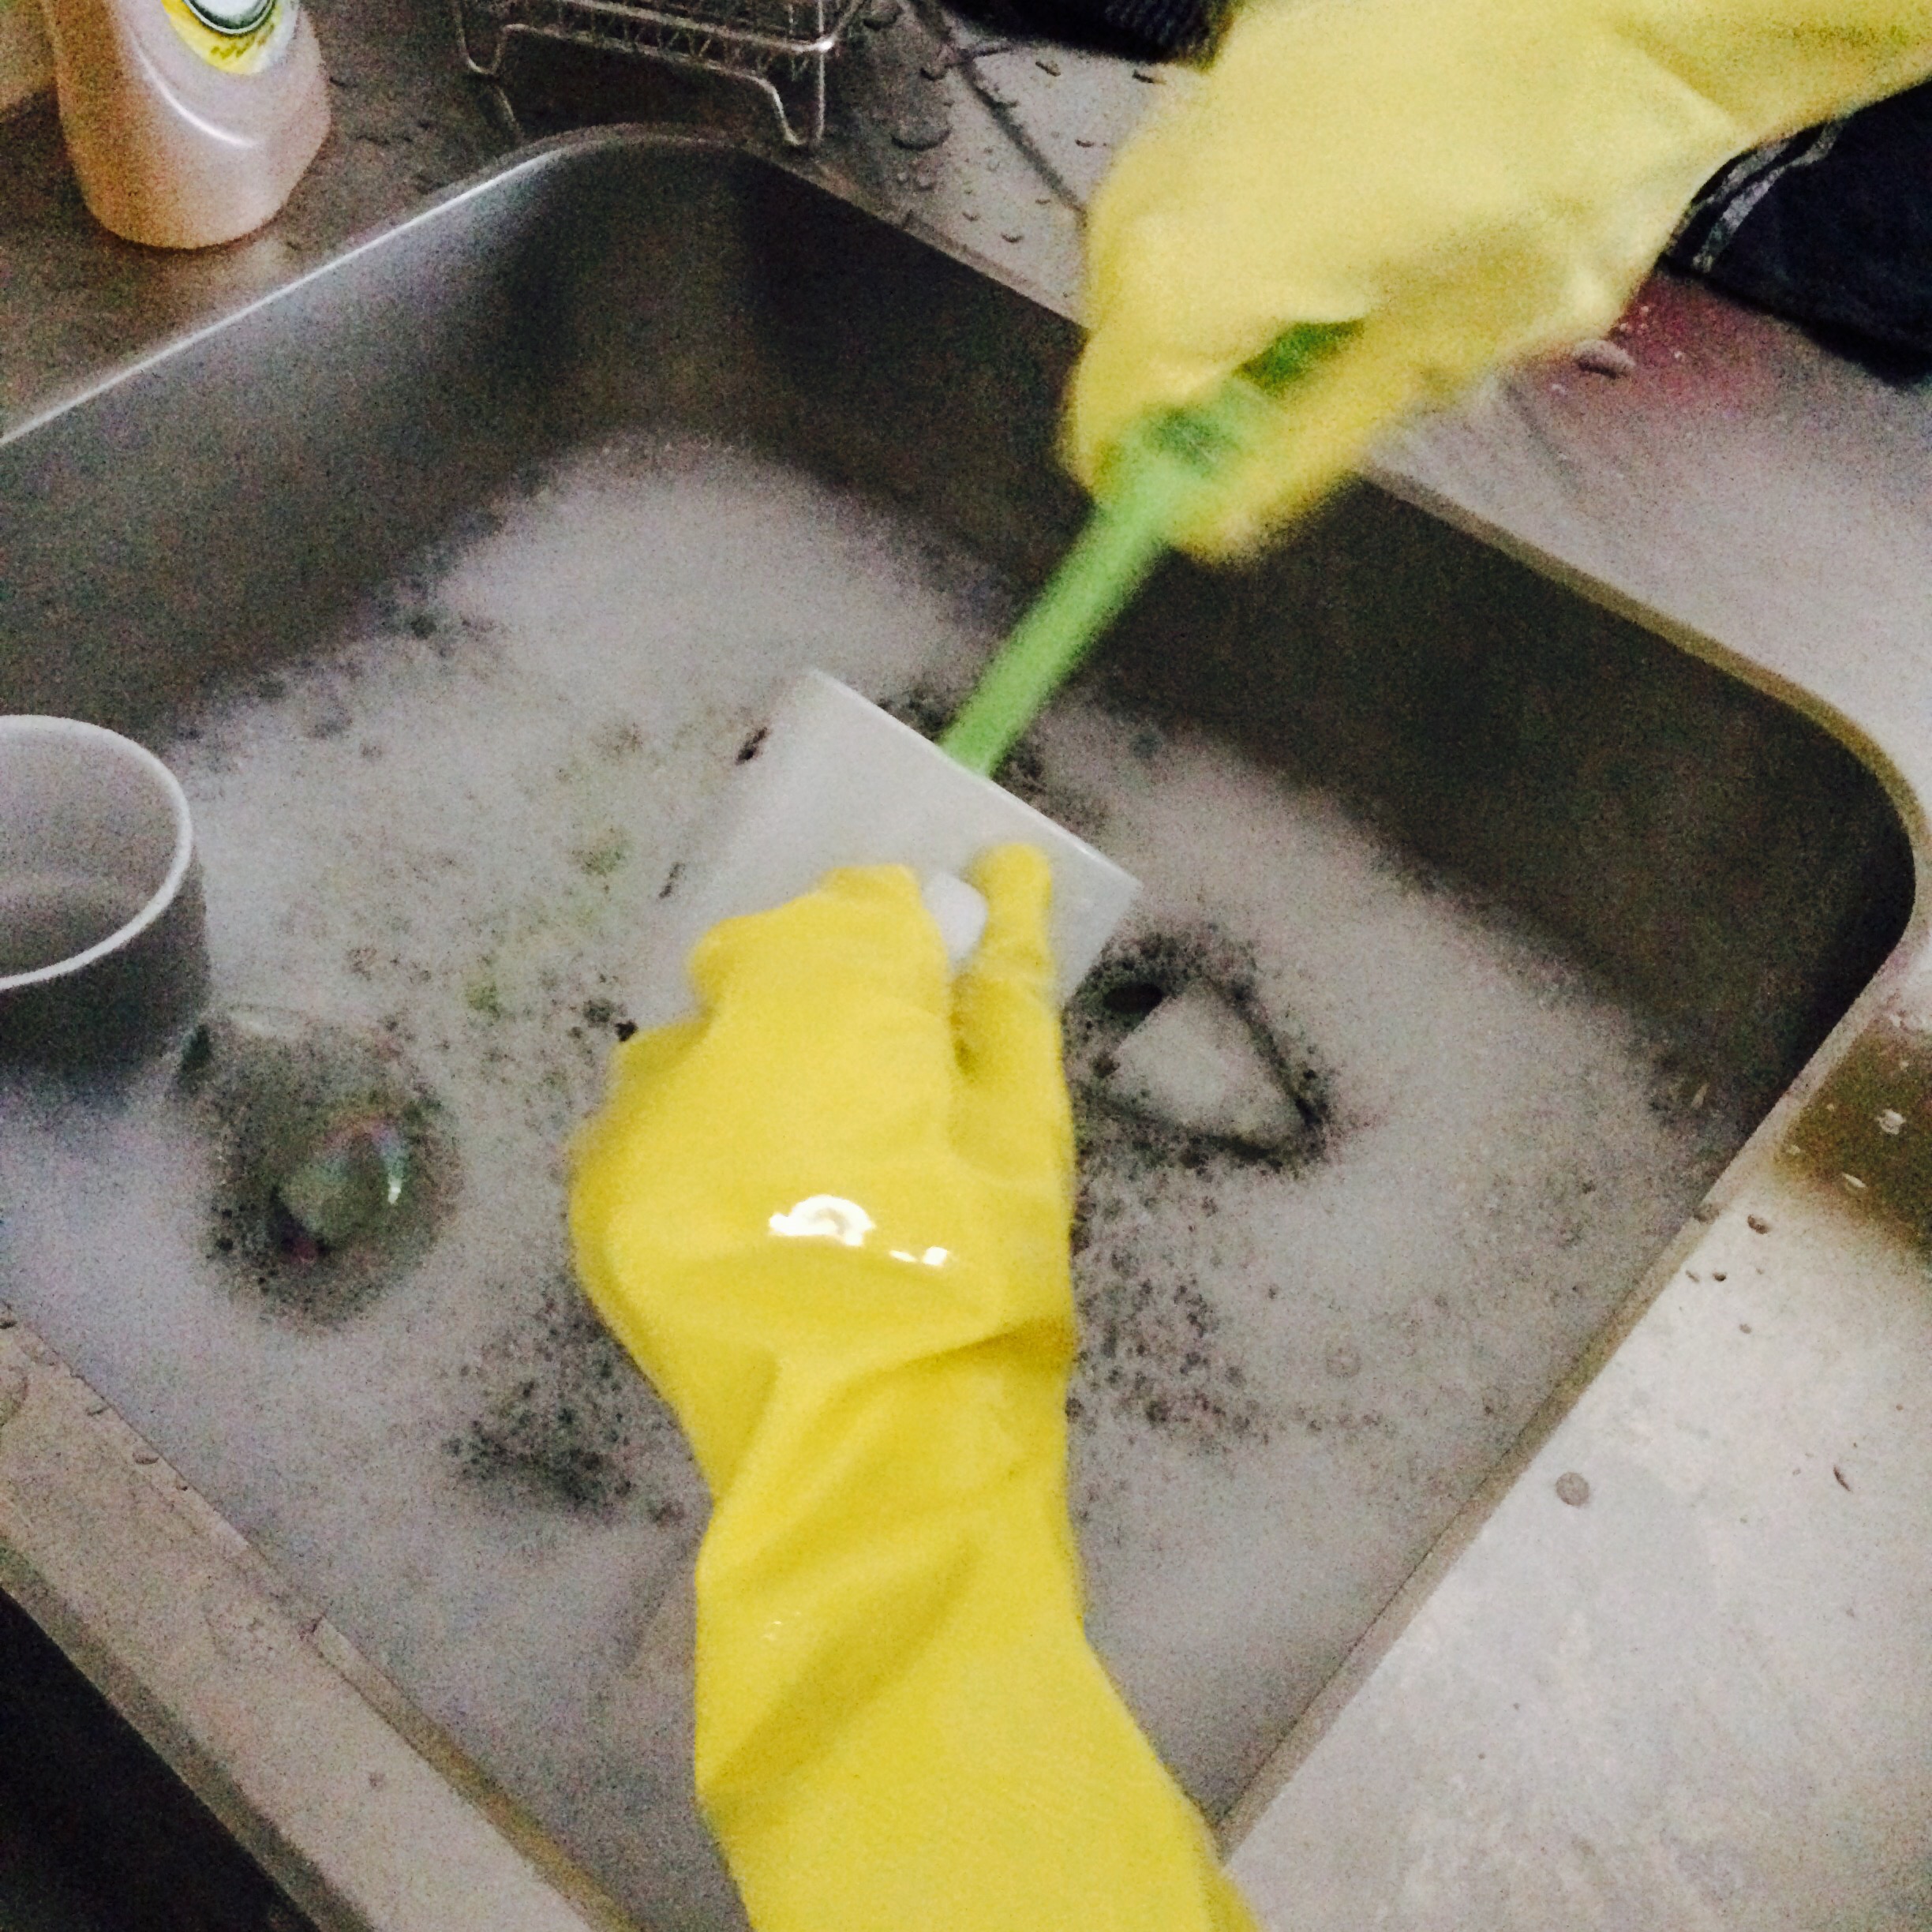 två barnhänder med gula diskhandskar diskar en mugg med en grön diskborste.